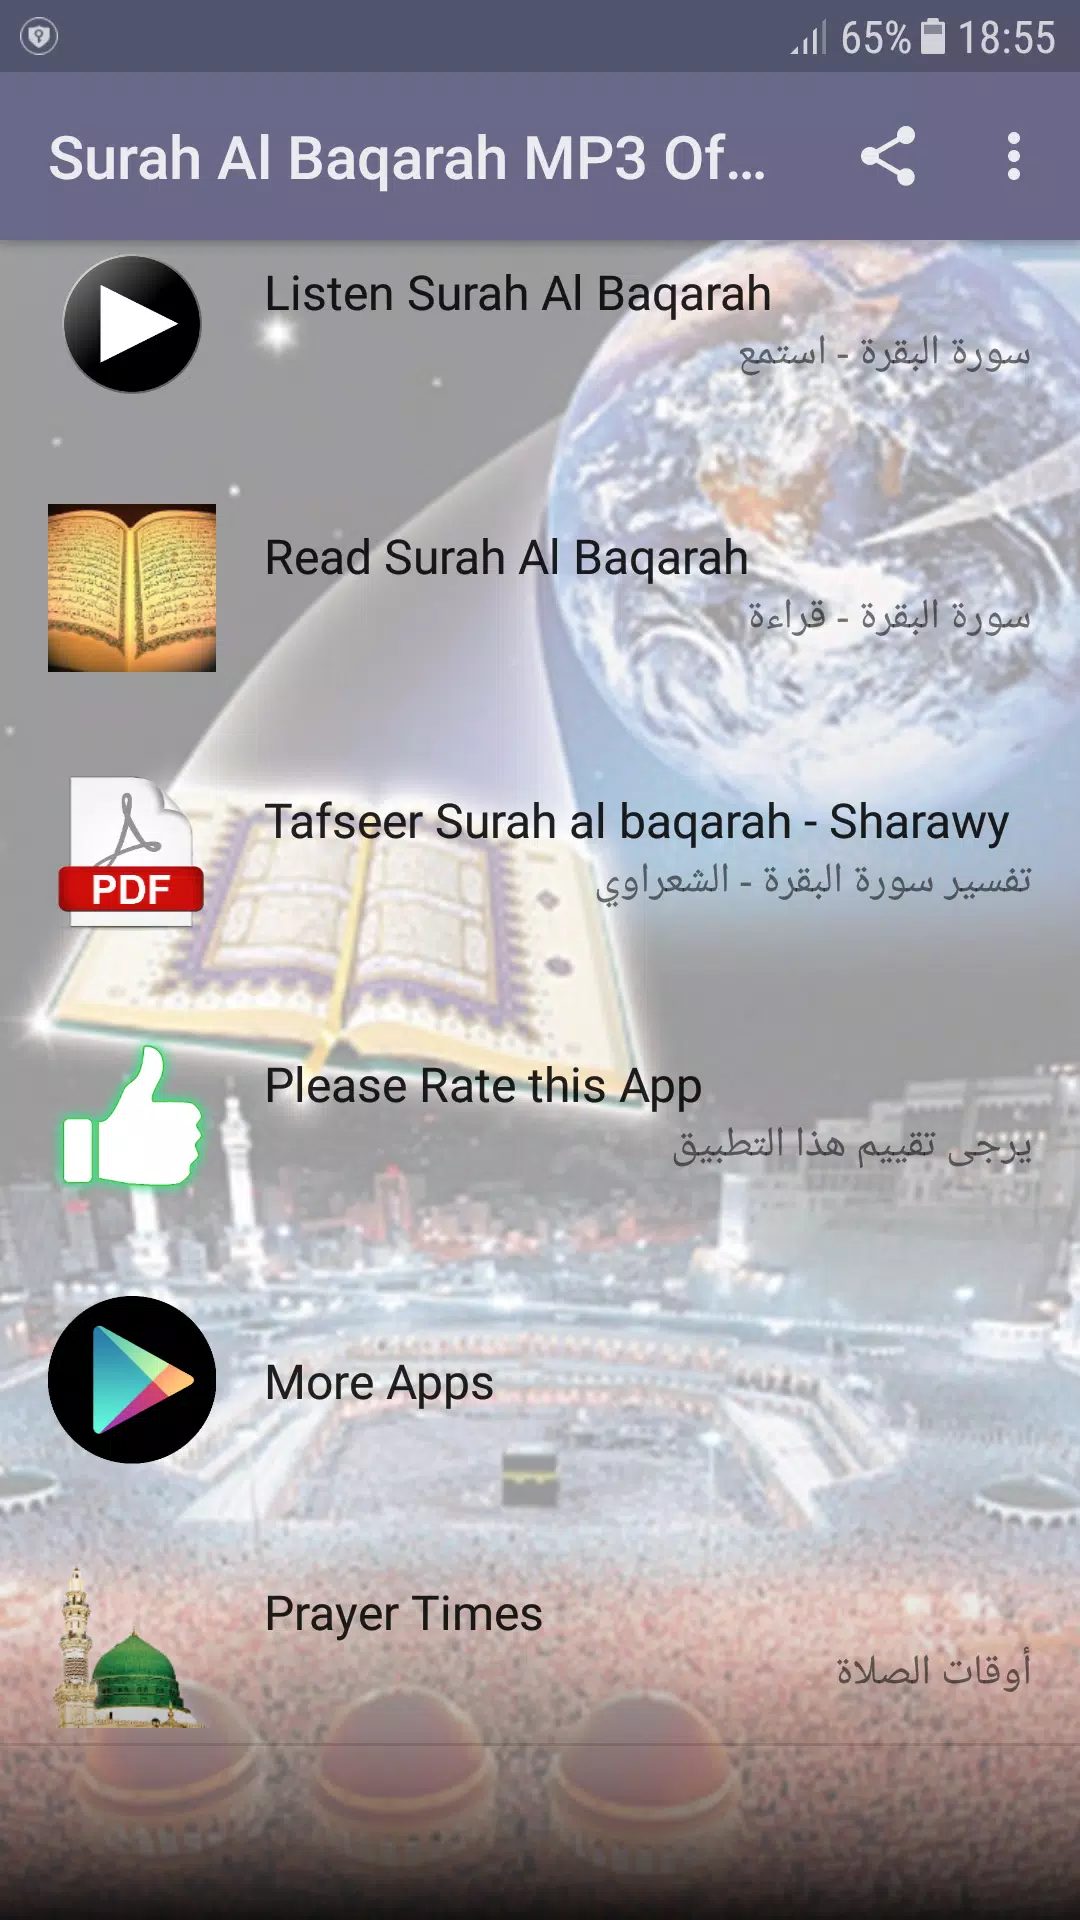 Surah Al Baqarah MP3 Offline APK pour Android Télécharger